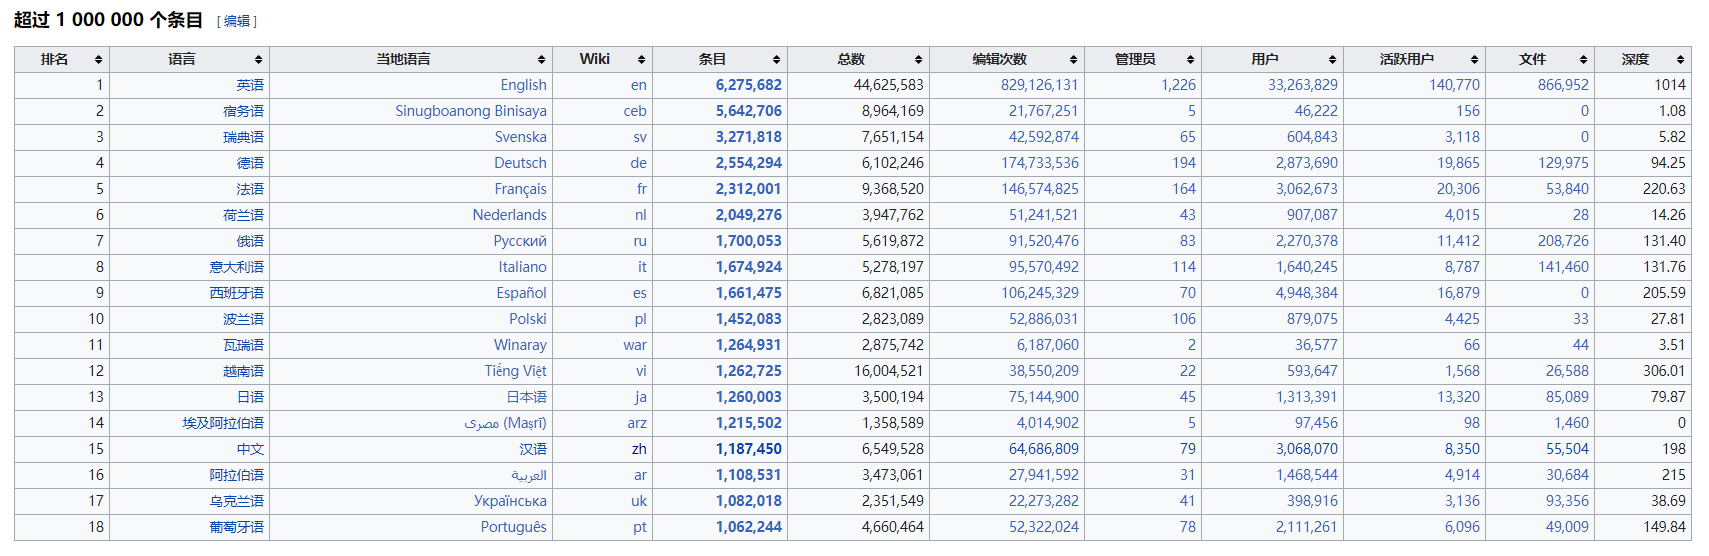 维基百科数据统计超过 1000000 个条目.png